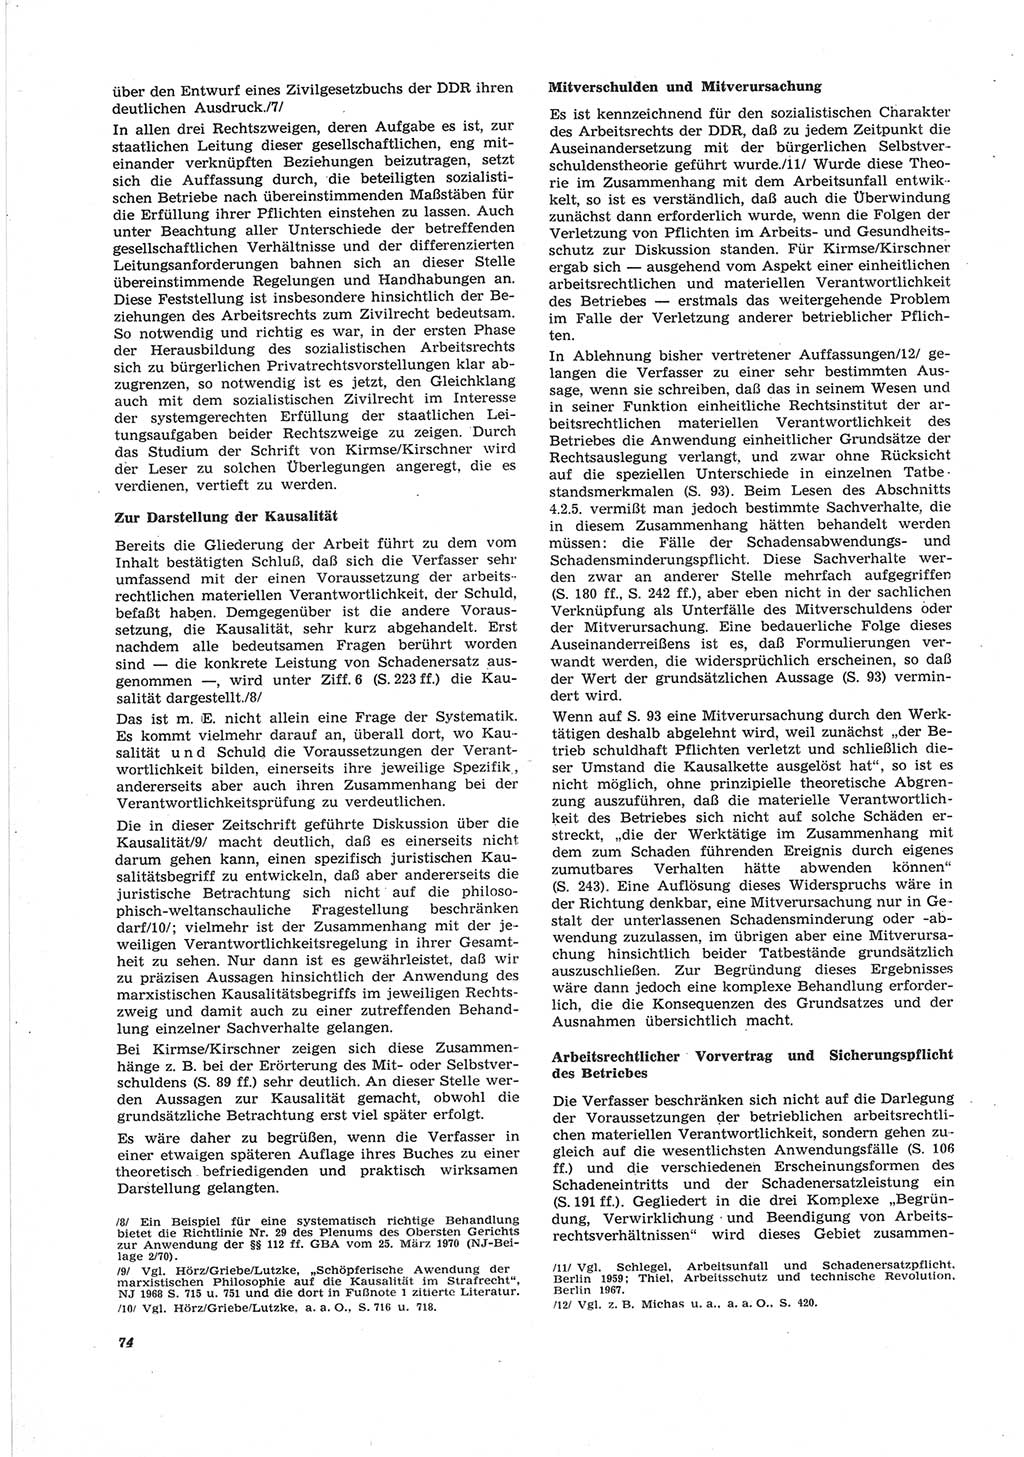 Neue Justiz (NJ), Zeitschrift für Recht und Rechtswissenschaft [Deutsche Demokratische Republik (DDR)], 25. Jahrgang 1971, Seite 74 (NJ DDR 1971, S. 74)